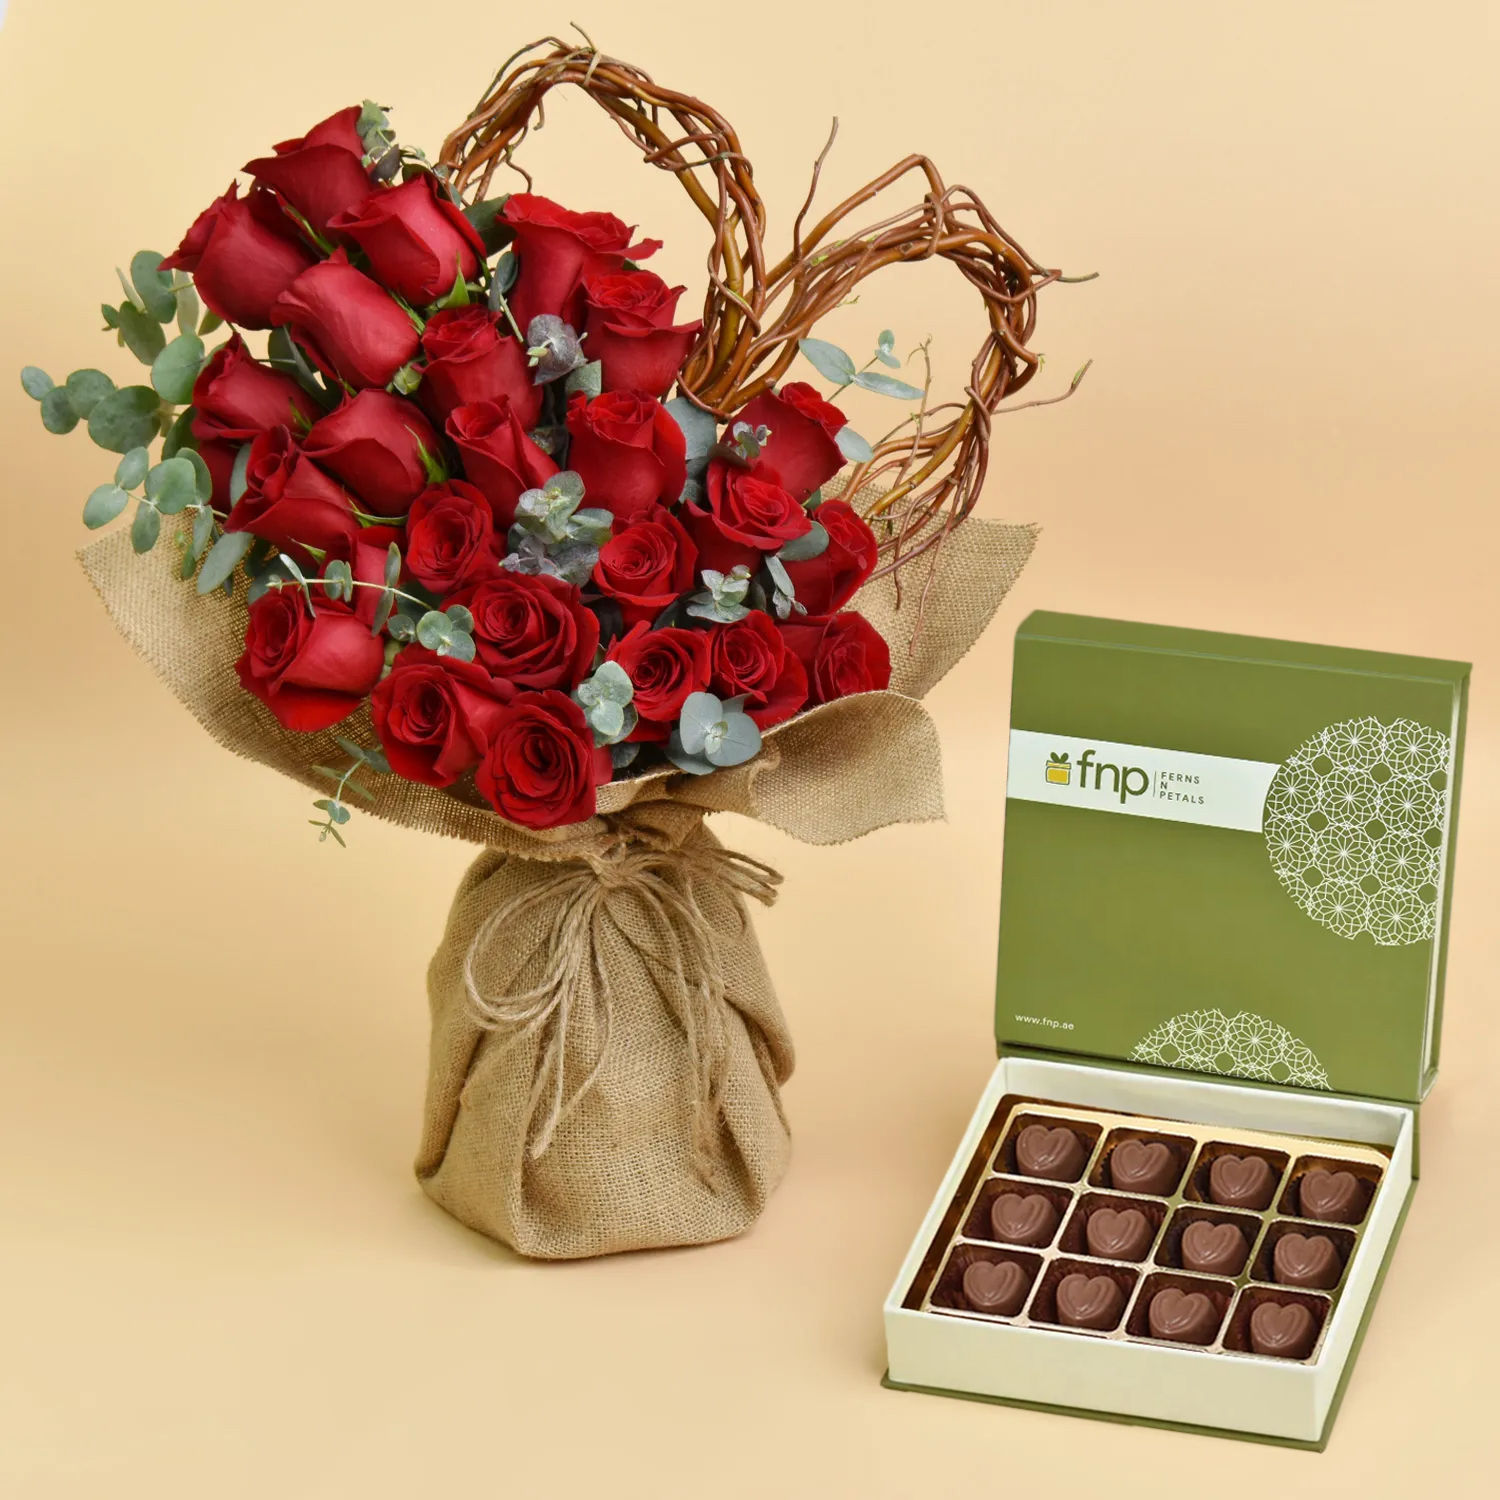 أون لاين هدية باقة ورد أحمر أنيقة مع علبة شوكولاته توصيل هدايا في Uae Fnp 